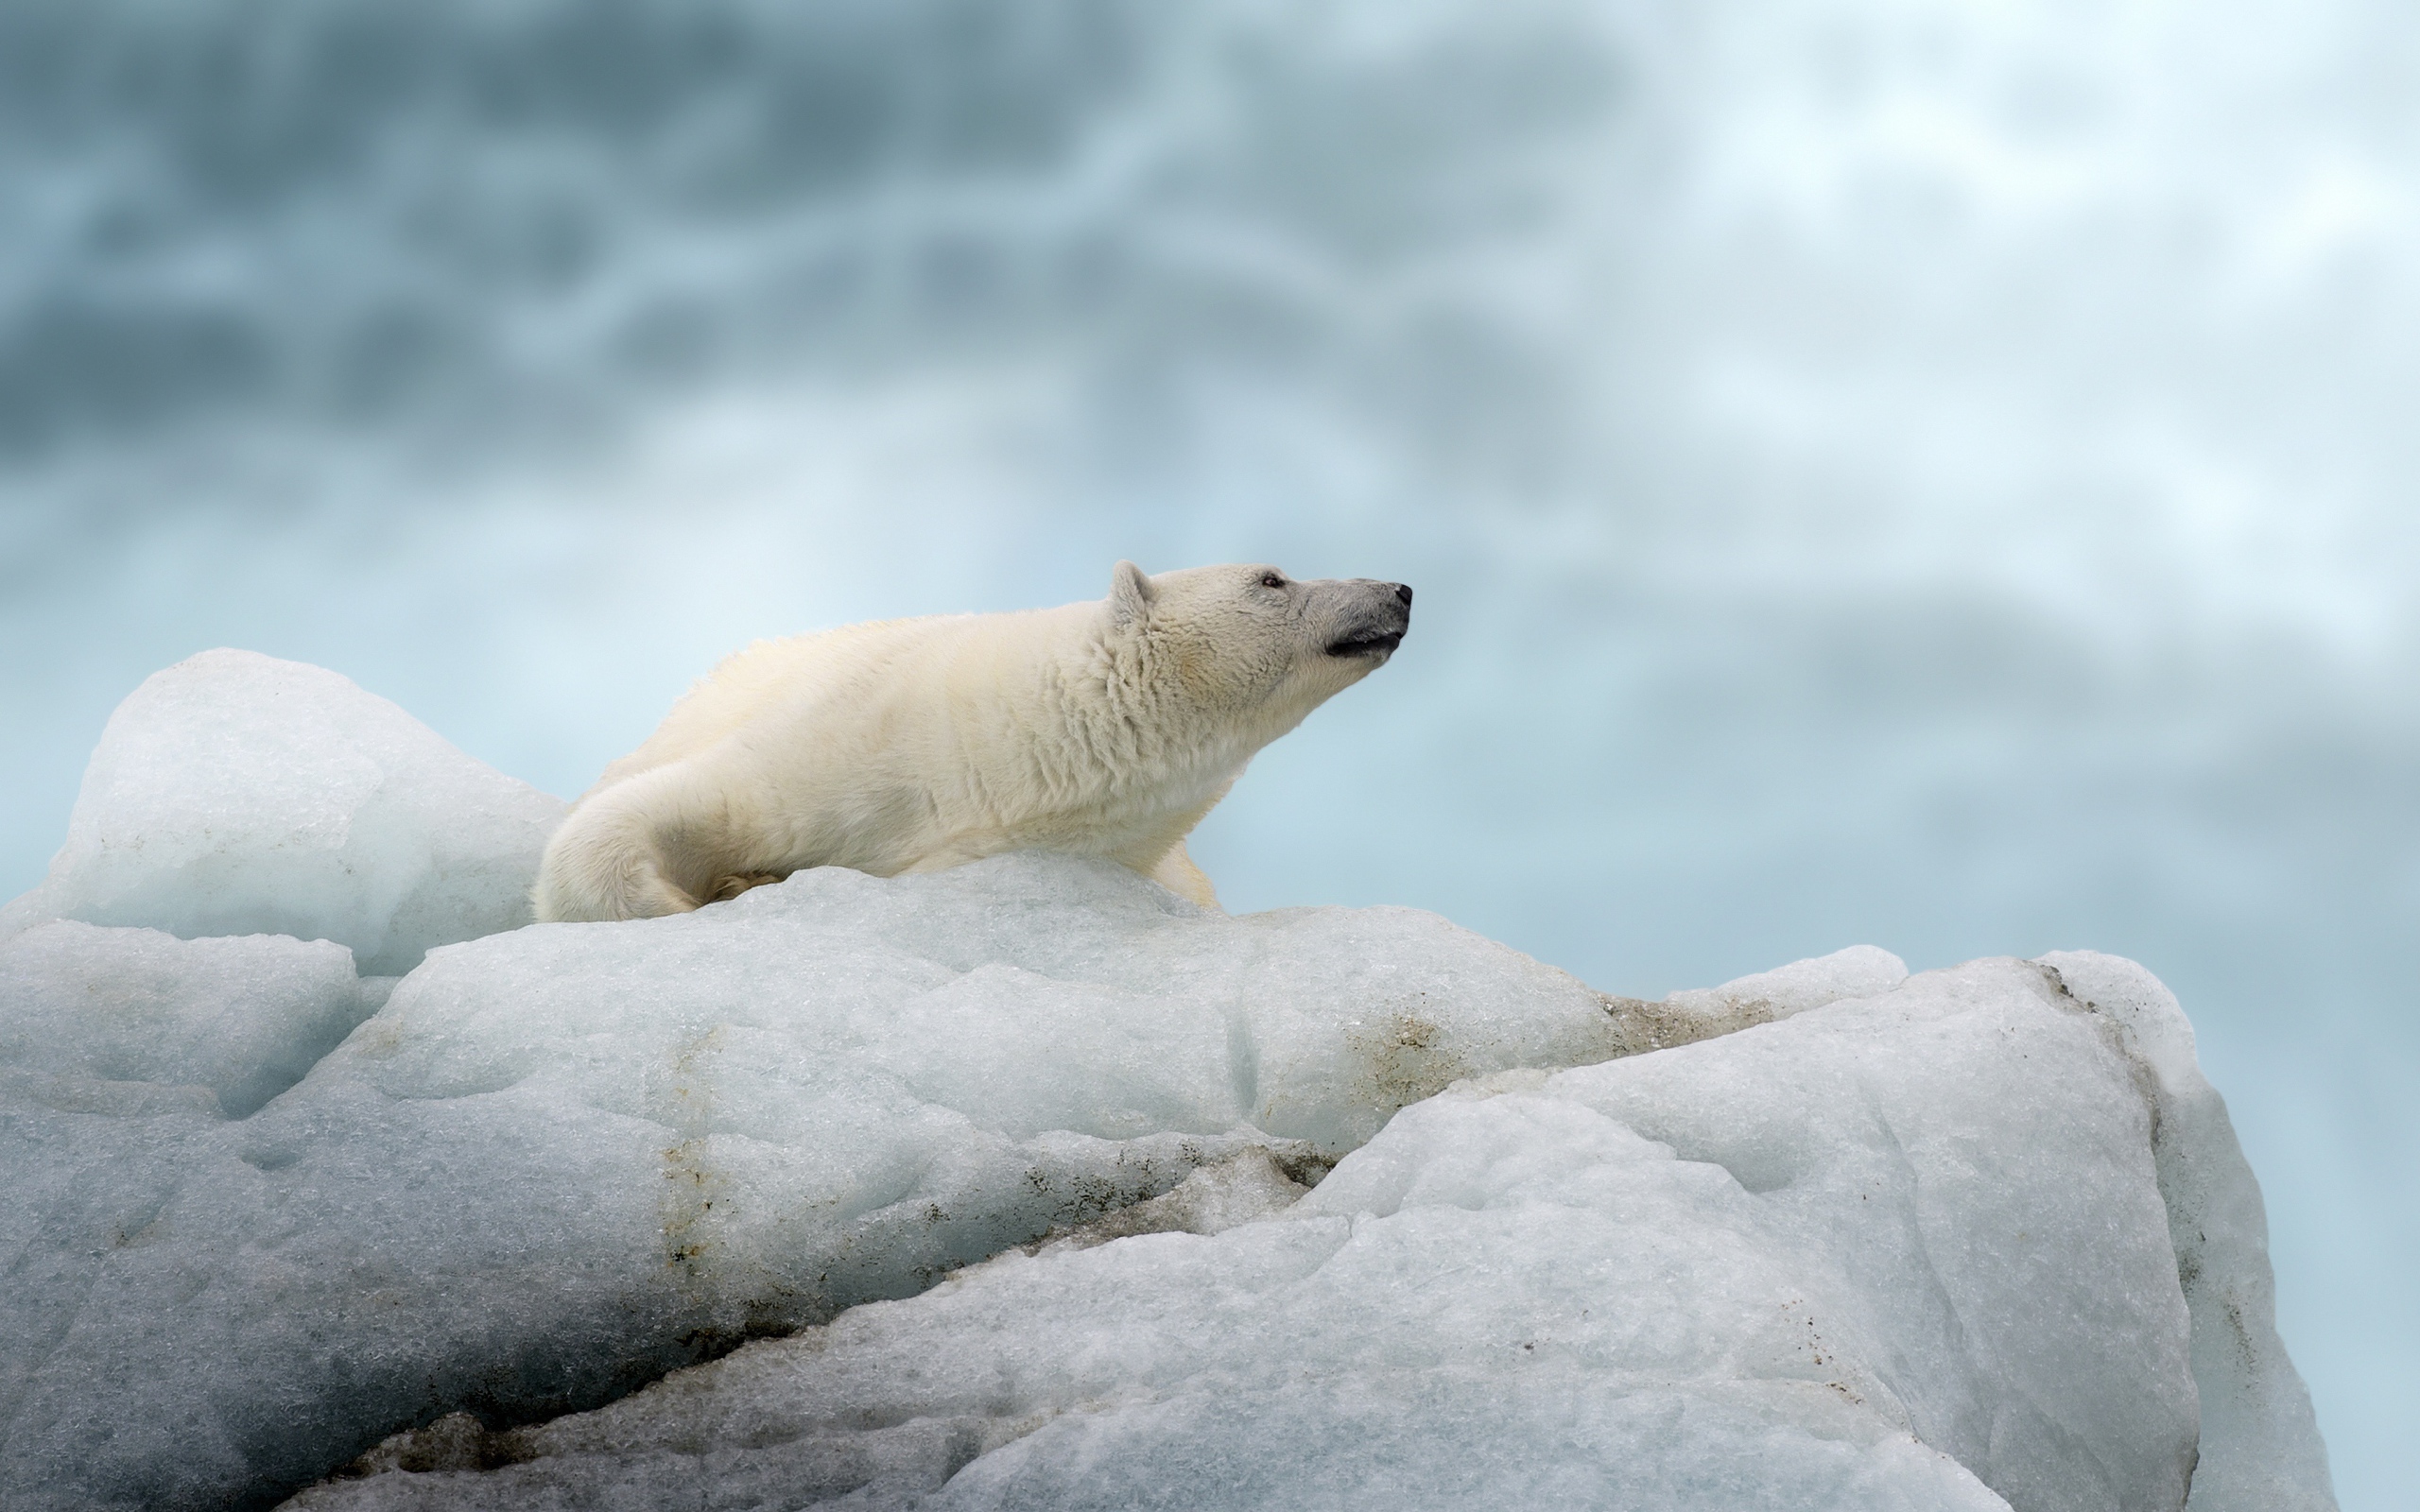 Большой полярный медведь лежит на холодной льдине